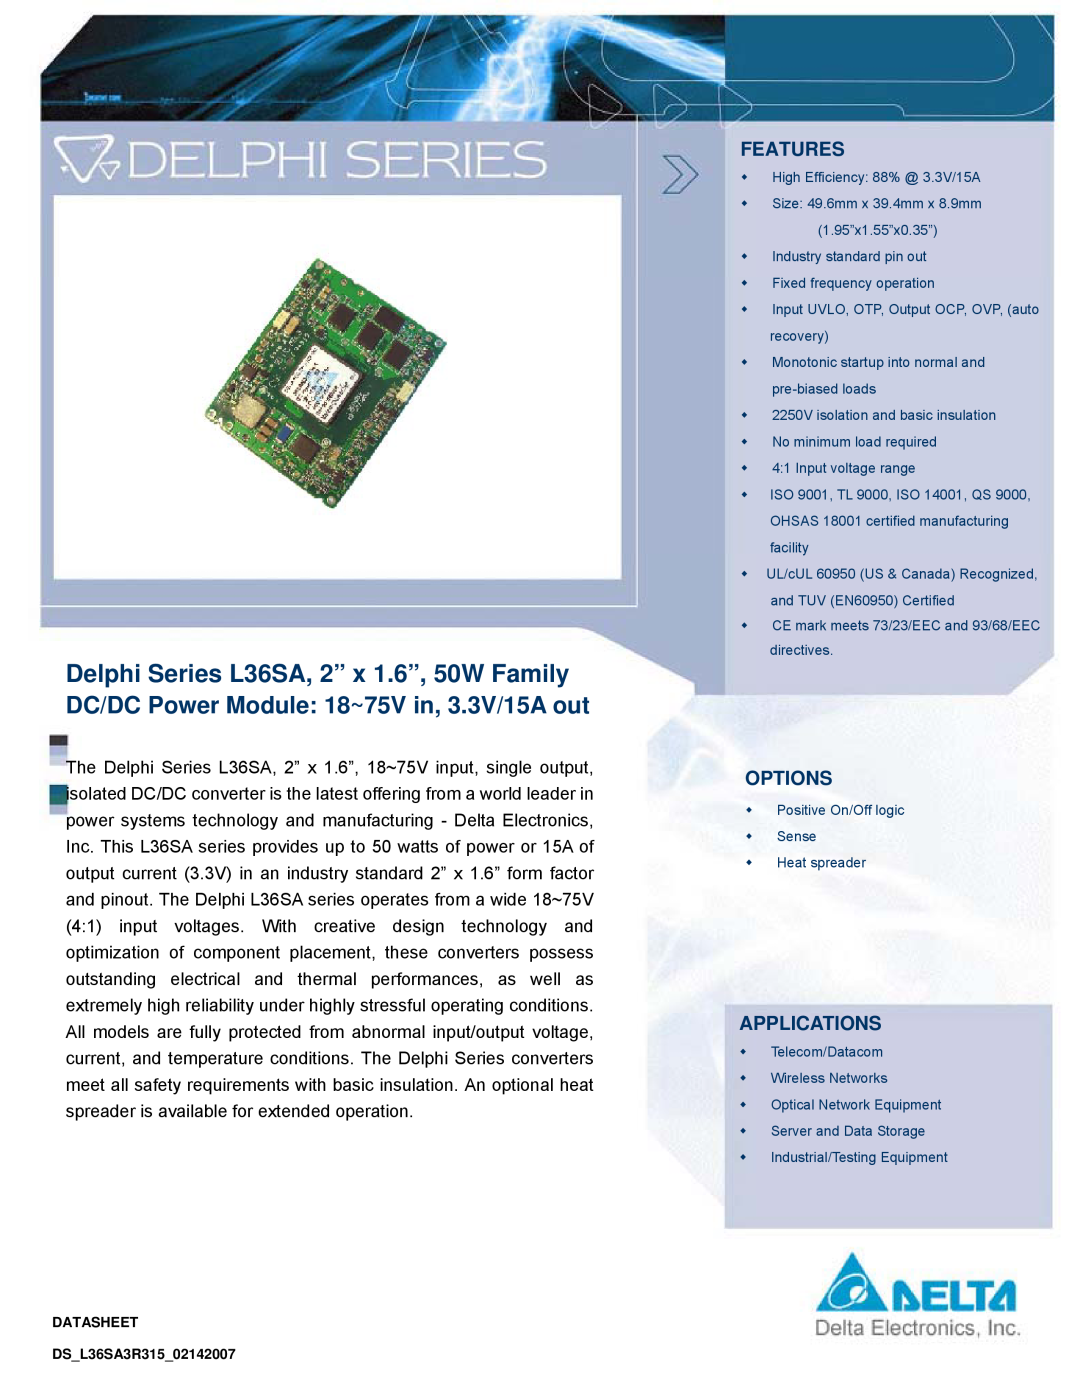 Delta Electronics manual Delphi Series L36SA, 2” x 1.6”, 50W Family, Features, Options, Applications 